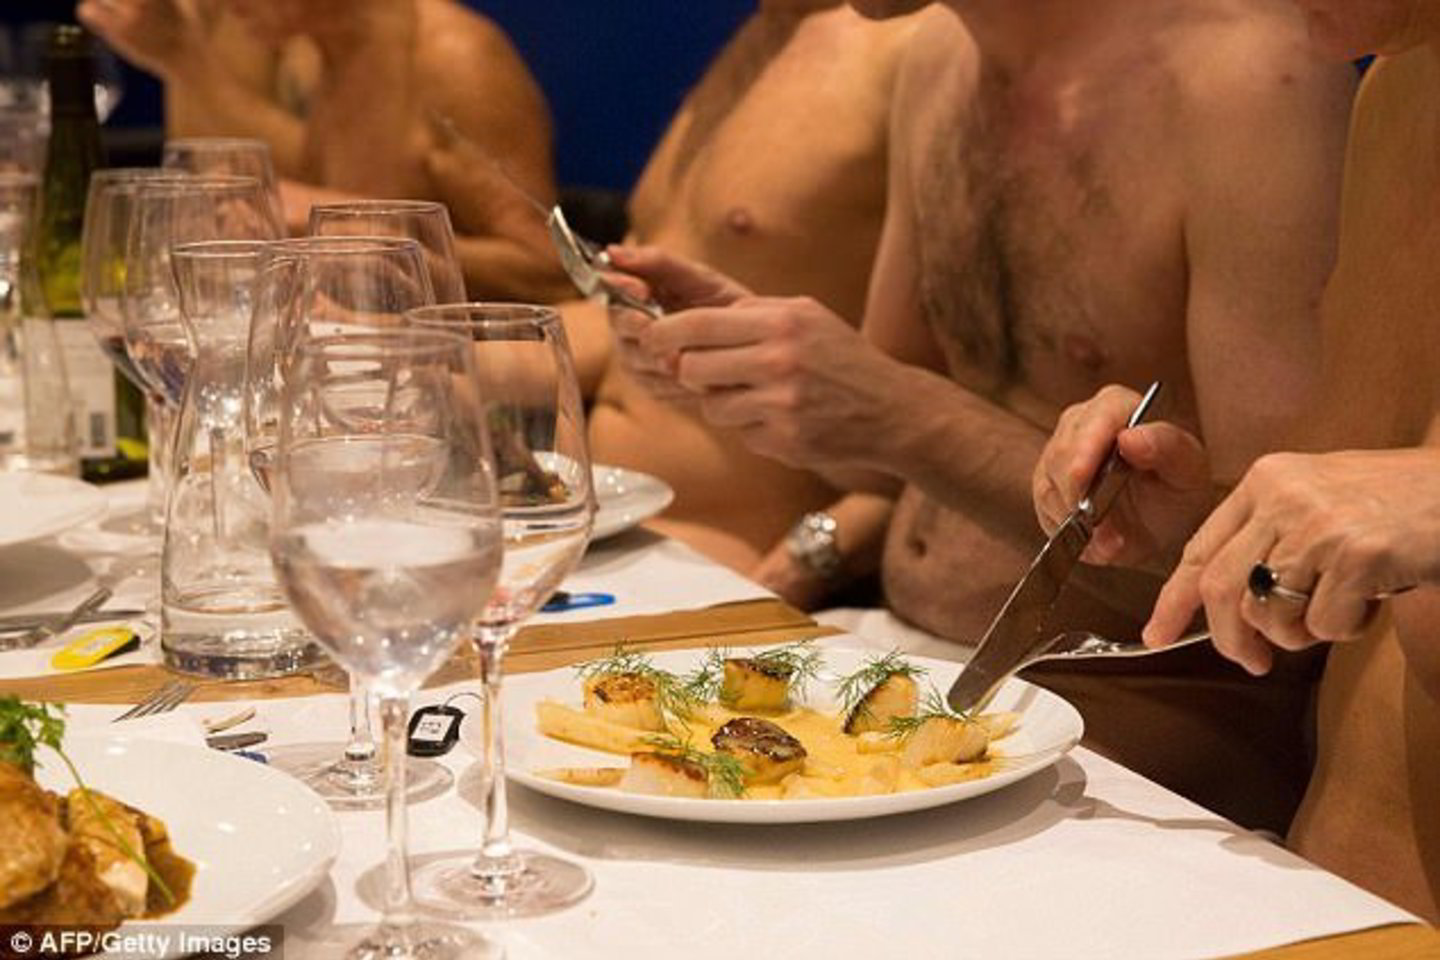  2017 m. Paryžiuje atidarytas pirmasis nudistų restoranas „O'Naturel“. 